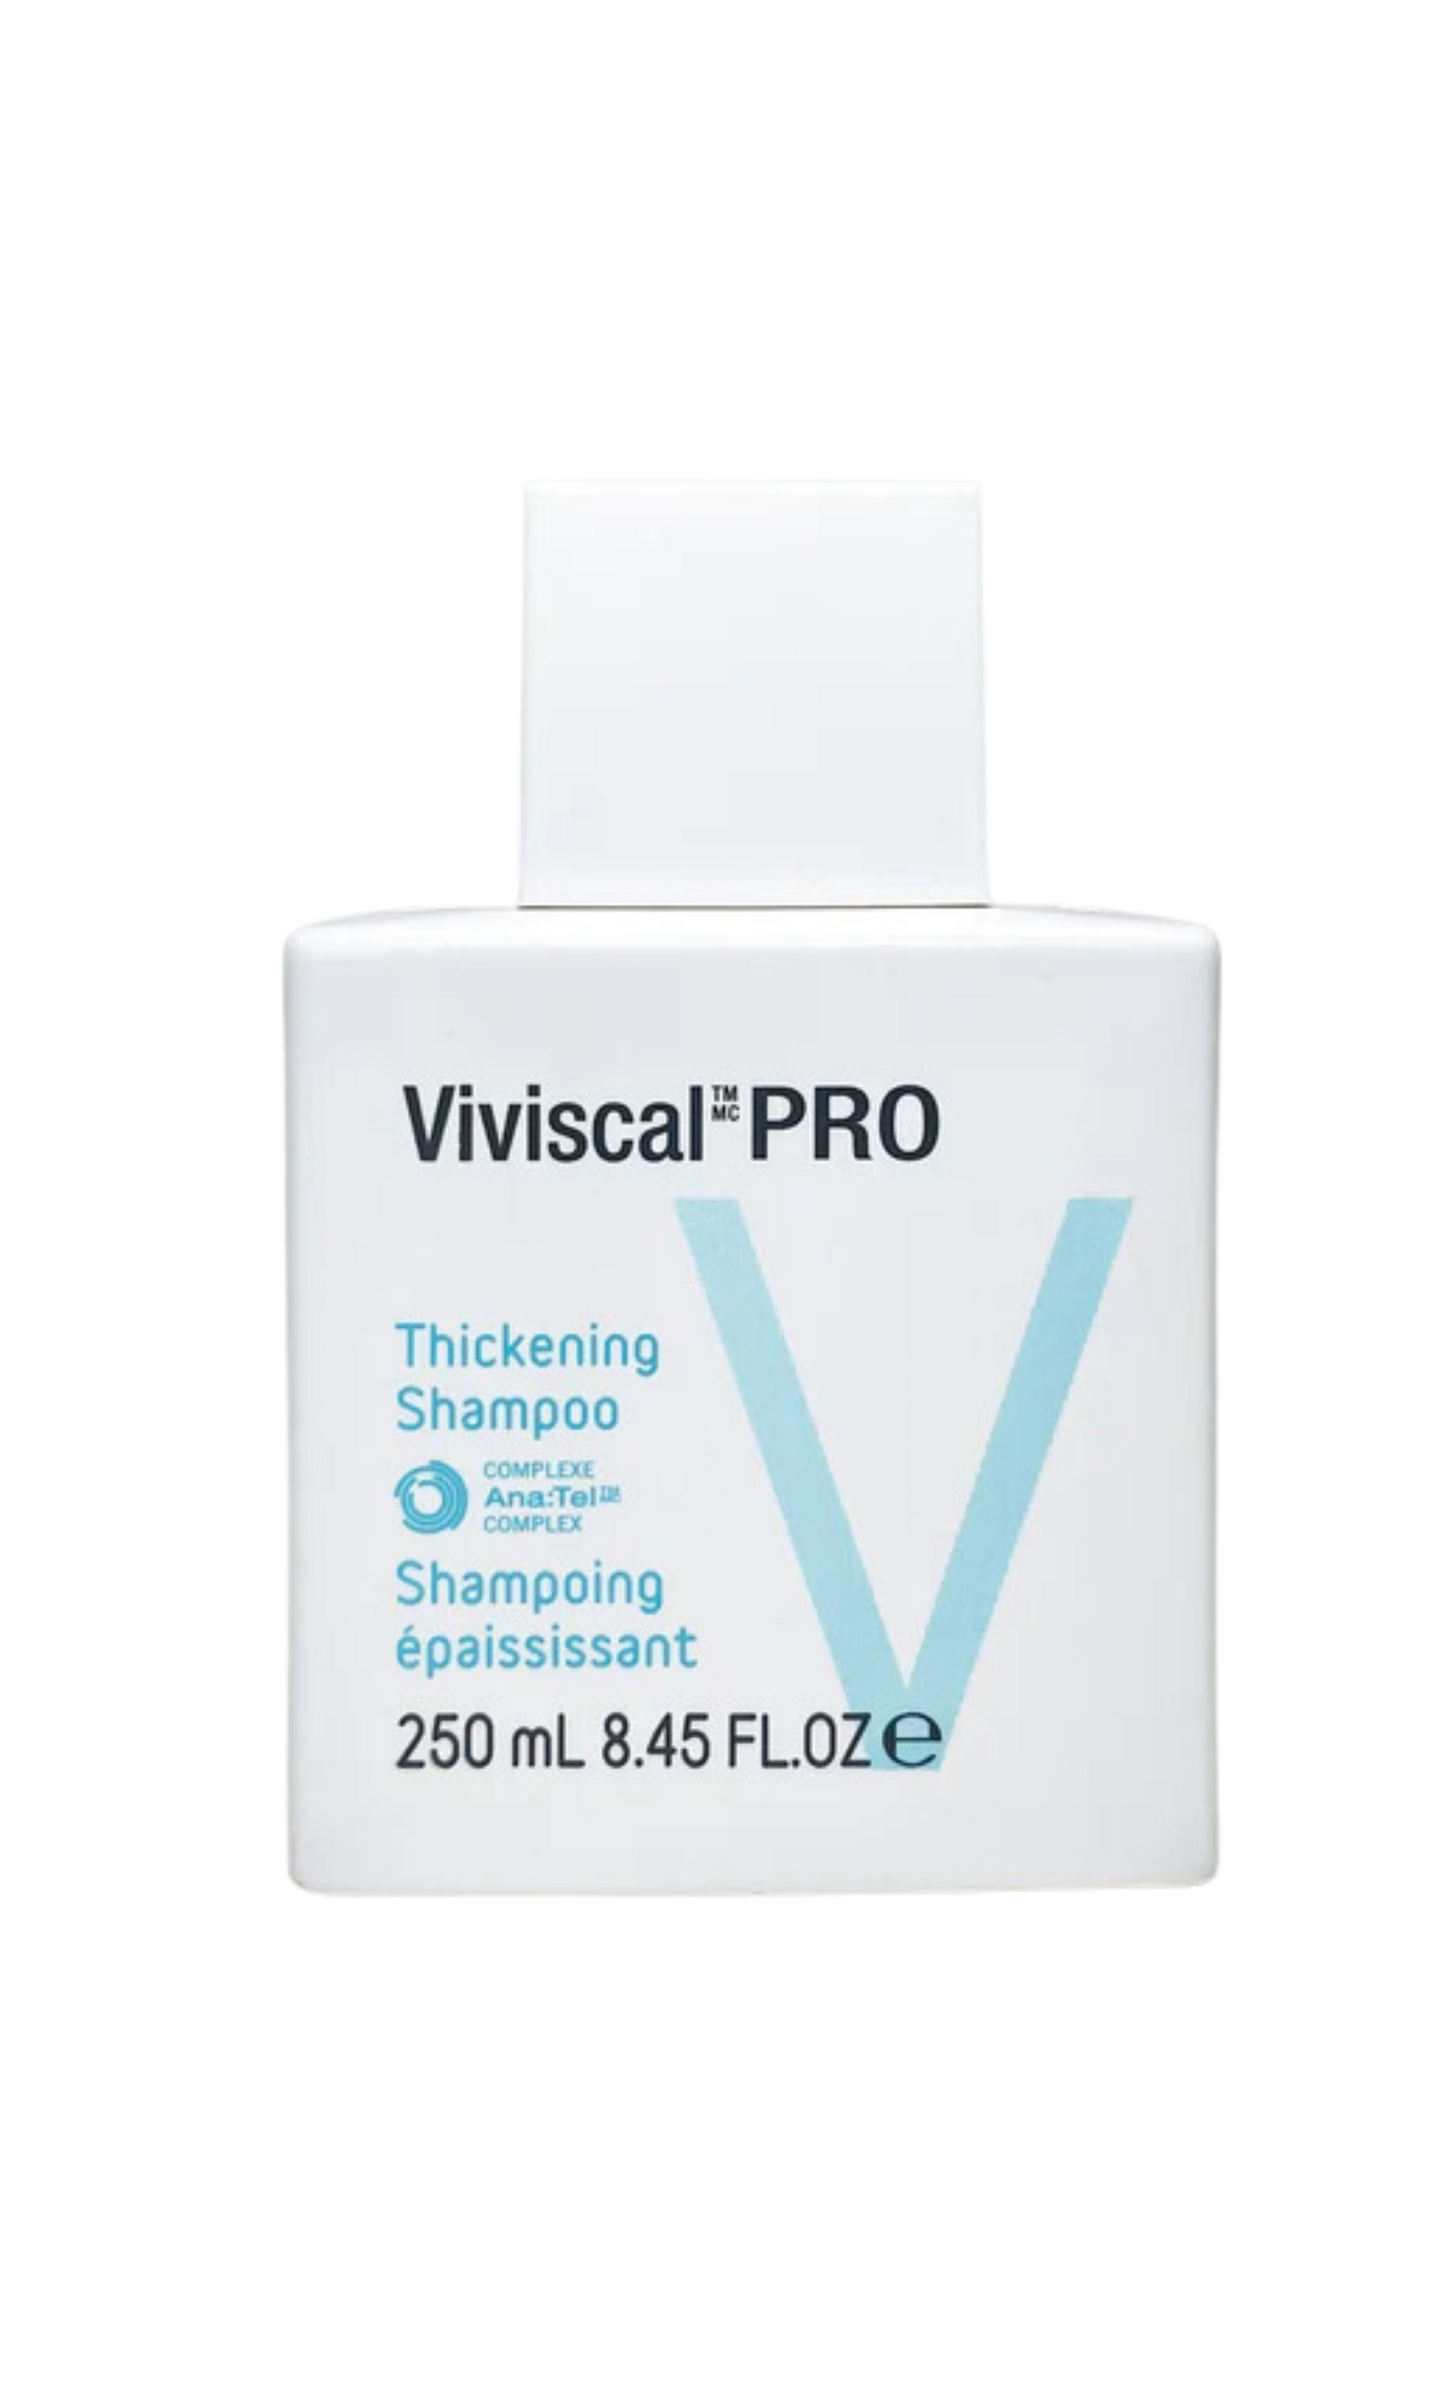 Viviscal Pro Thickening Shampoo